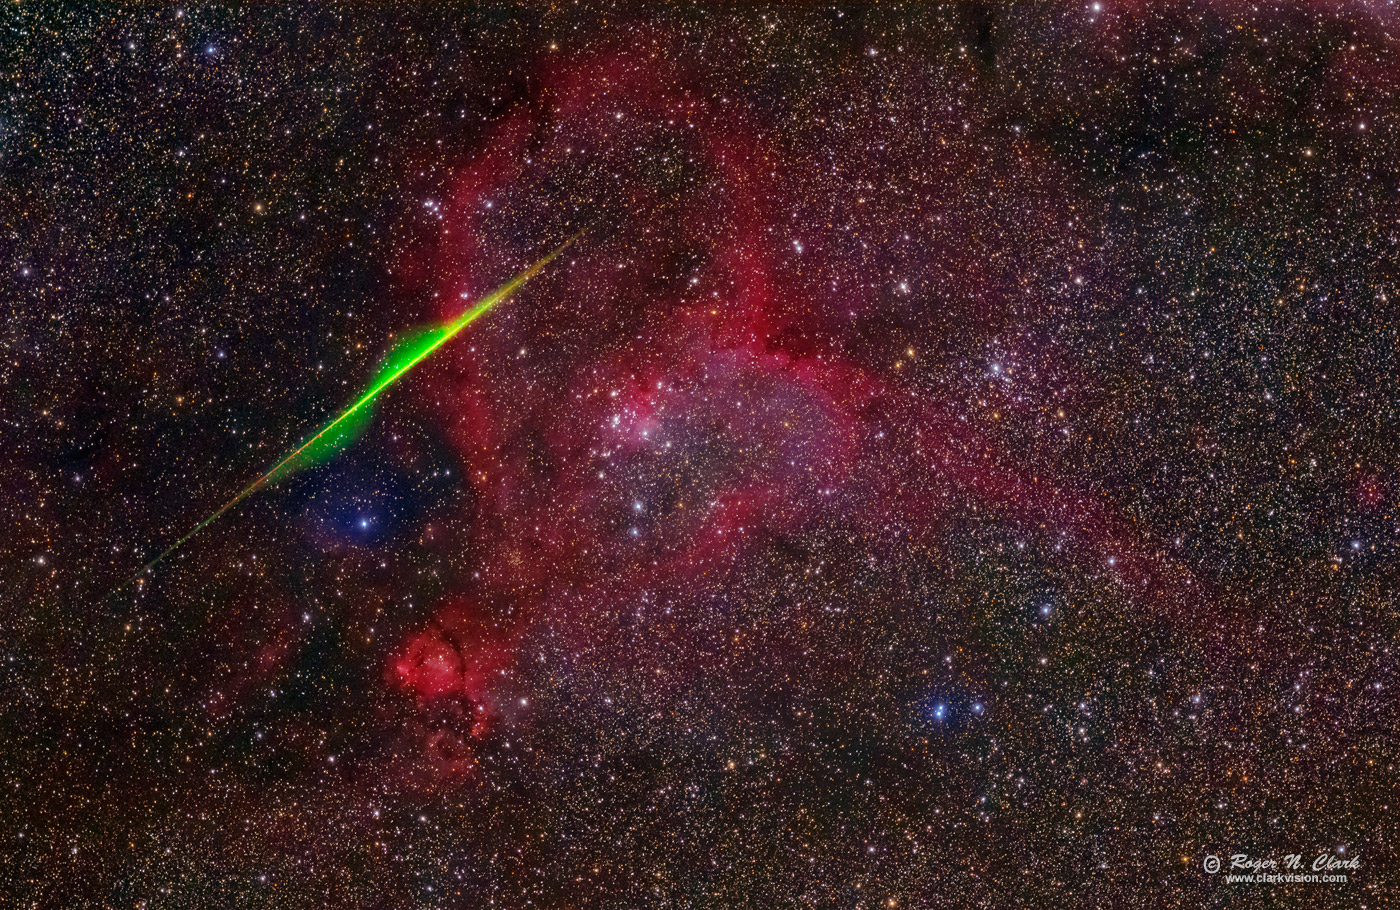 image heart-nebula+meteor-300mm.rnclark.av18.c08.12.2016.0J6A0119-64.g-1400s.jpg is Copyrighted by Roger N. Clark, www.clarkvision.com